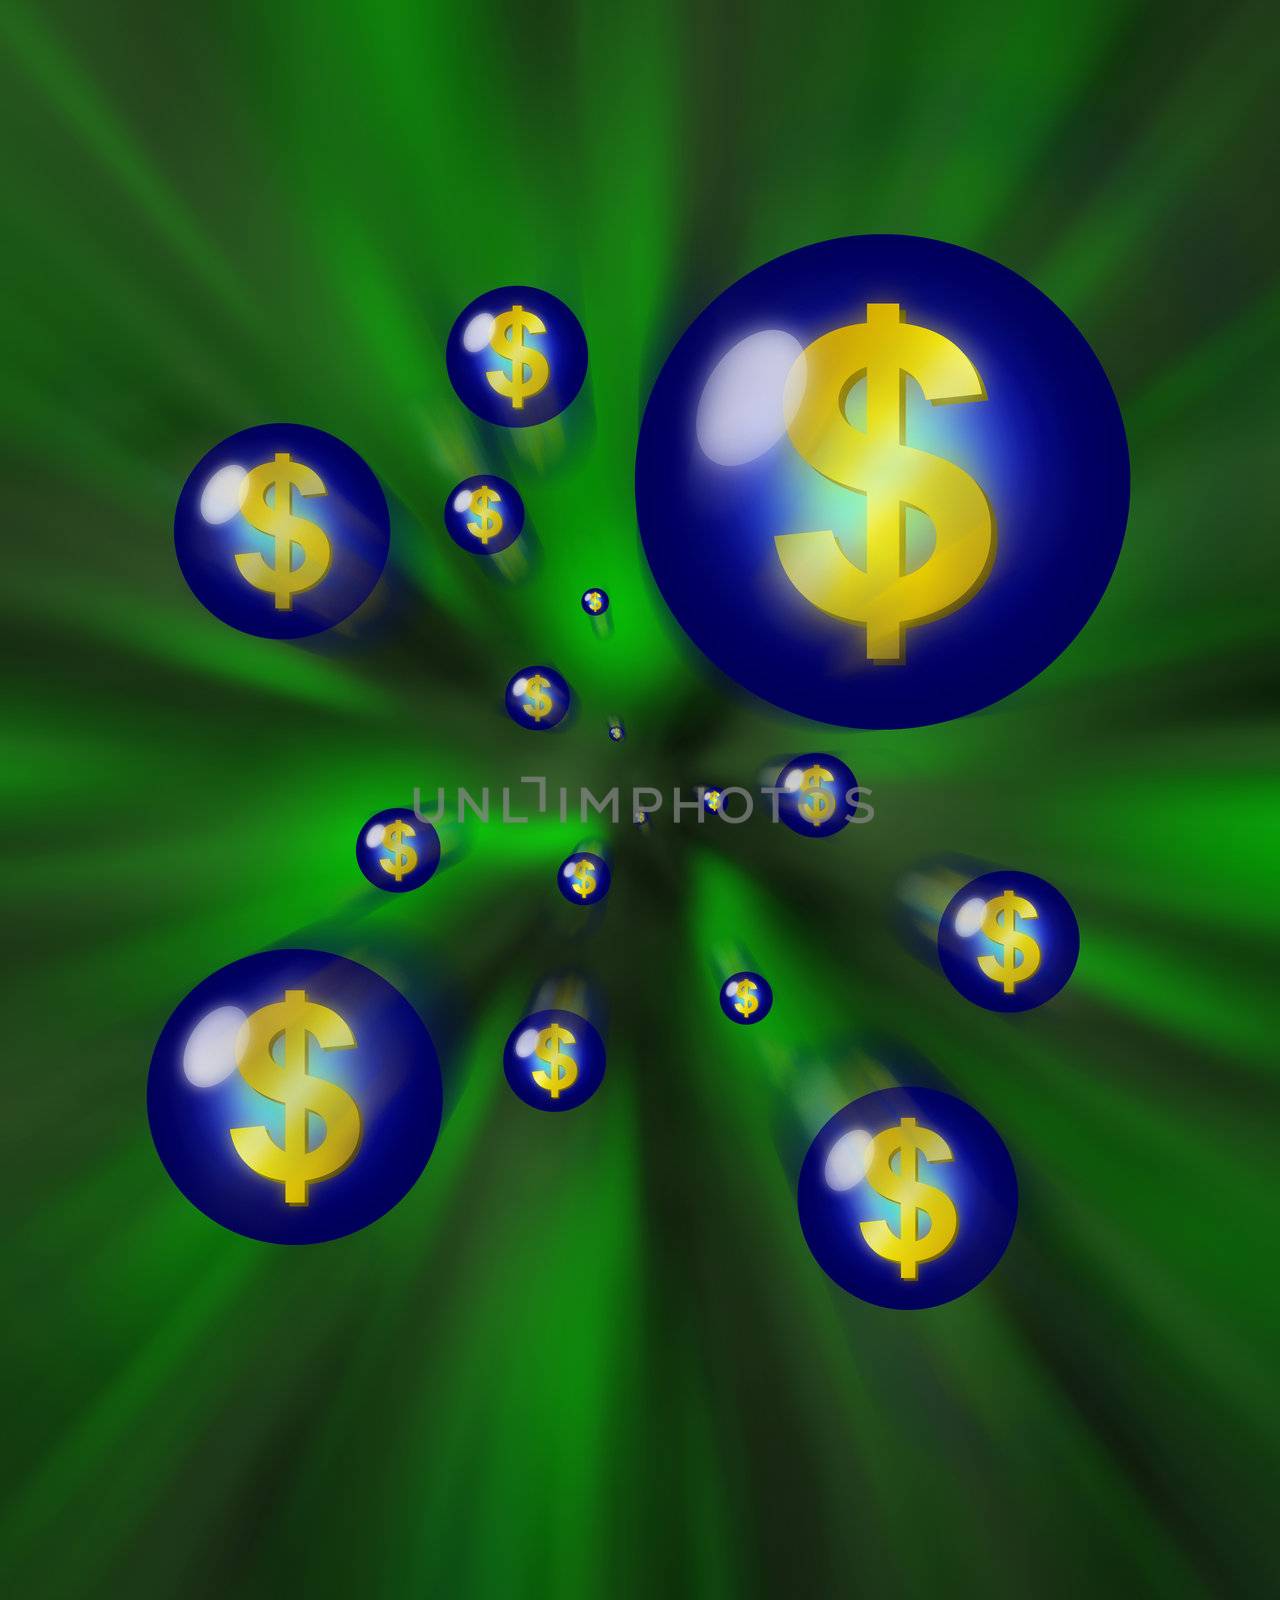 Dollar signs in orbs flying through a vortex